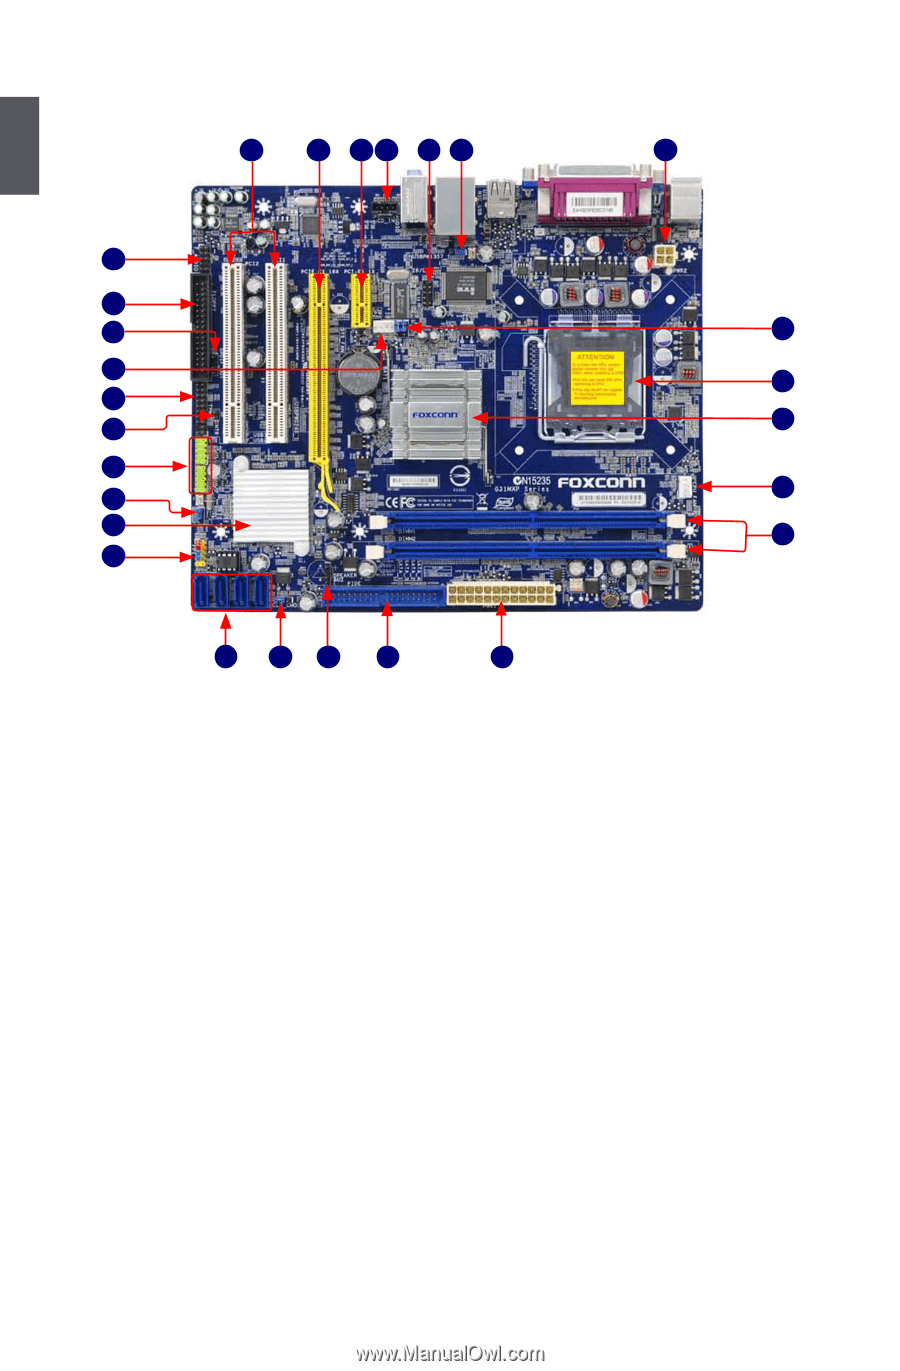 Инструкция К Foxconn G31Mxp